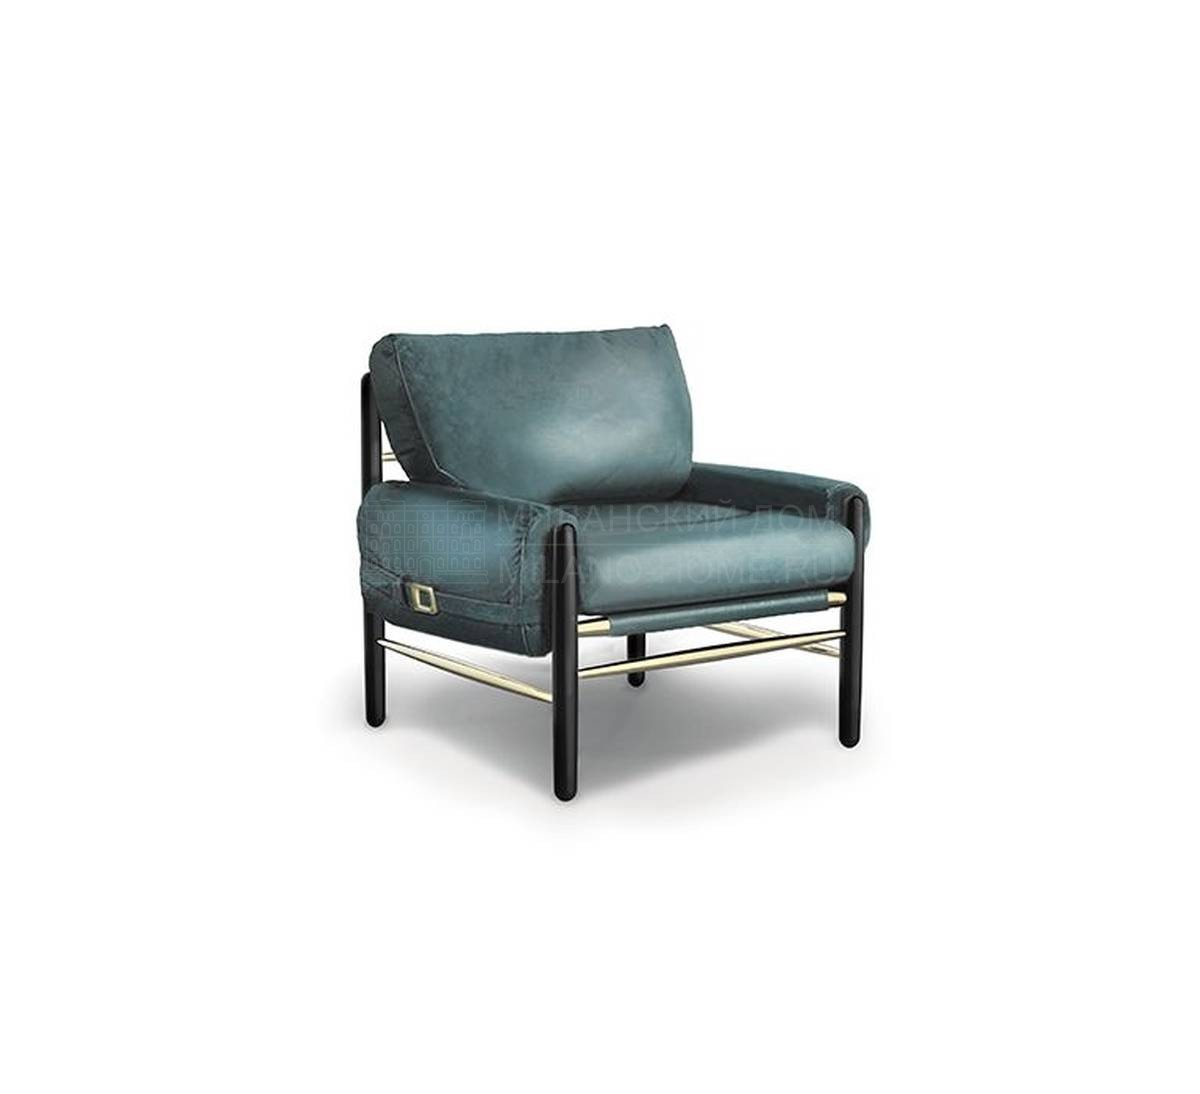 Кожаное кресло Dean/armchair из Португалии фабрики DELIGHTFULL